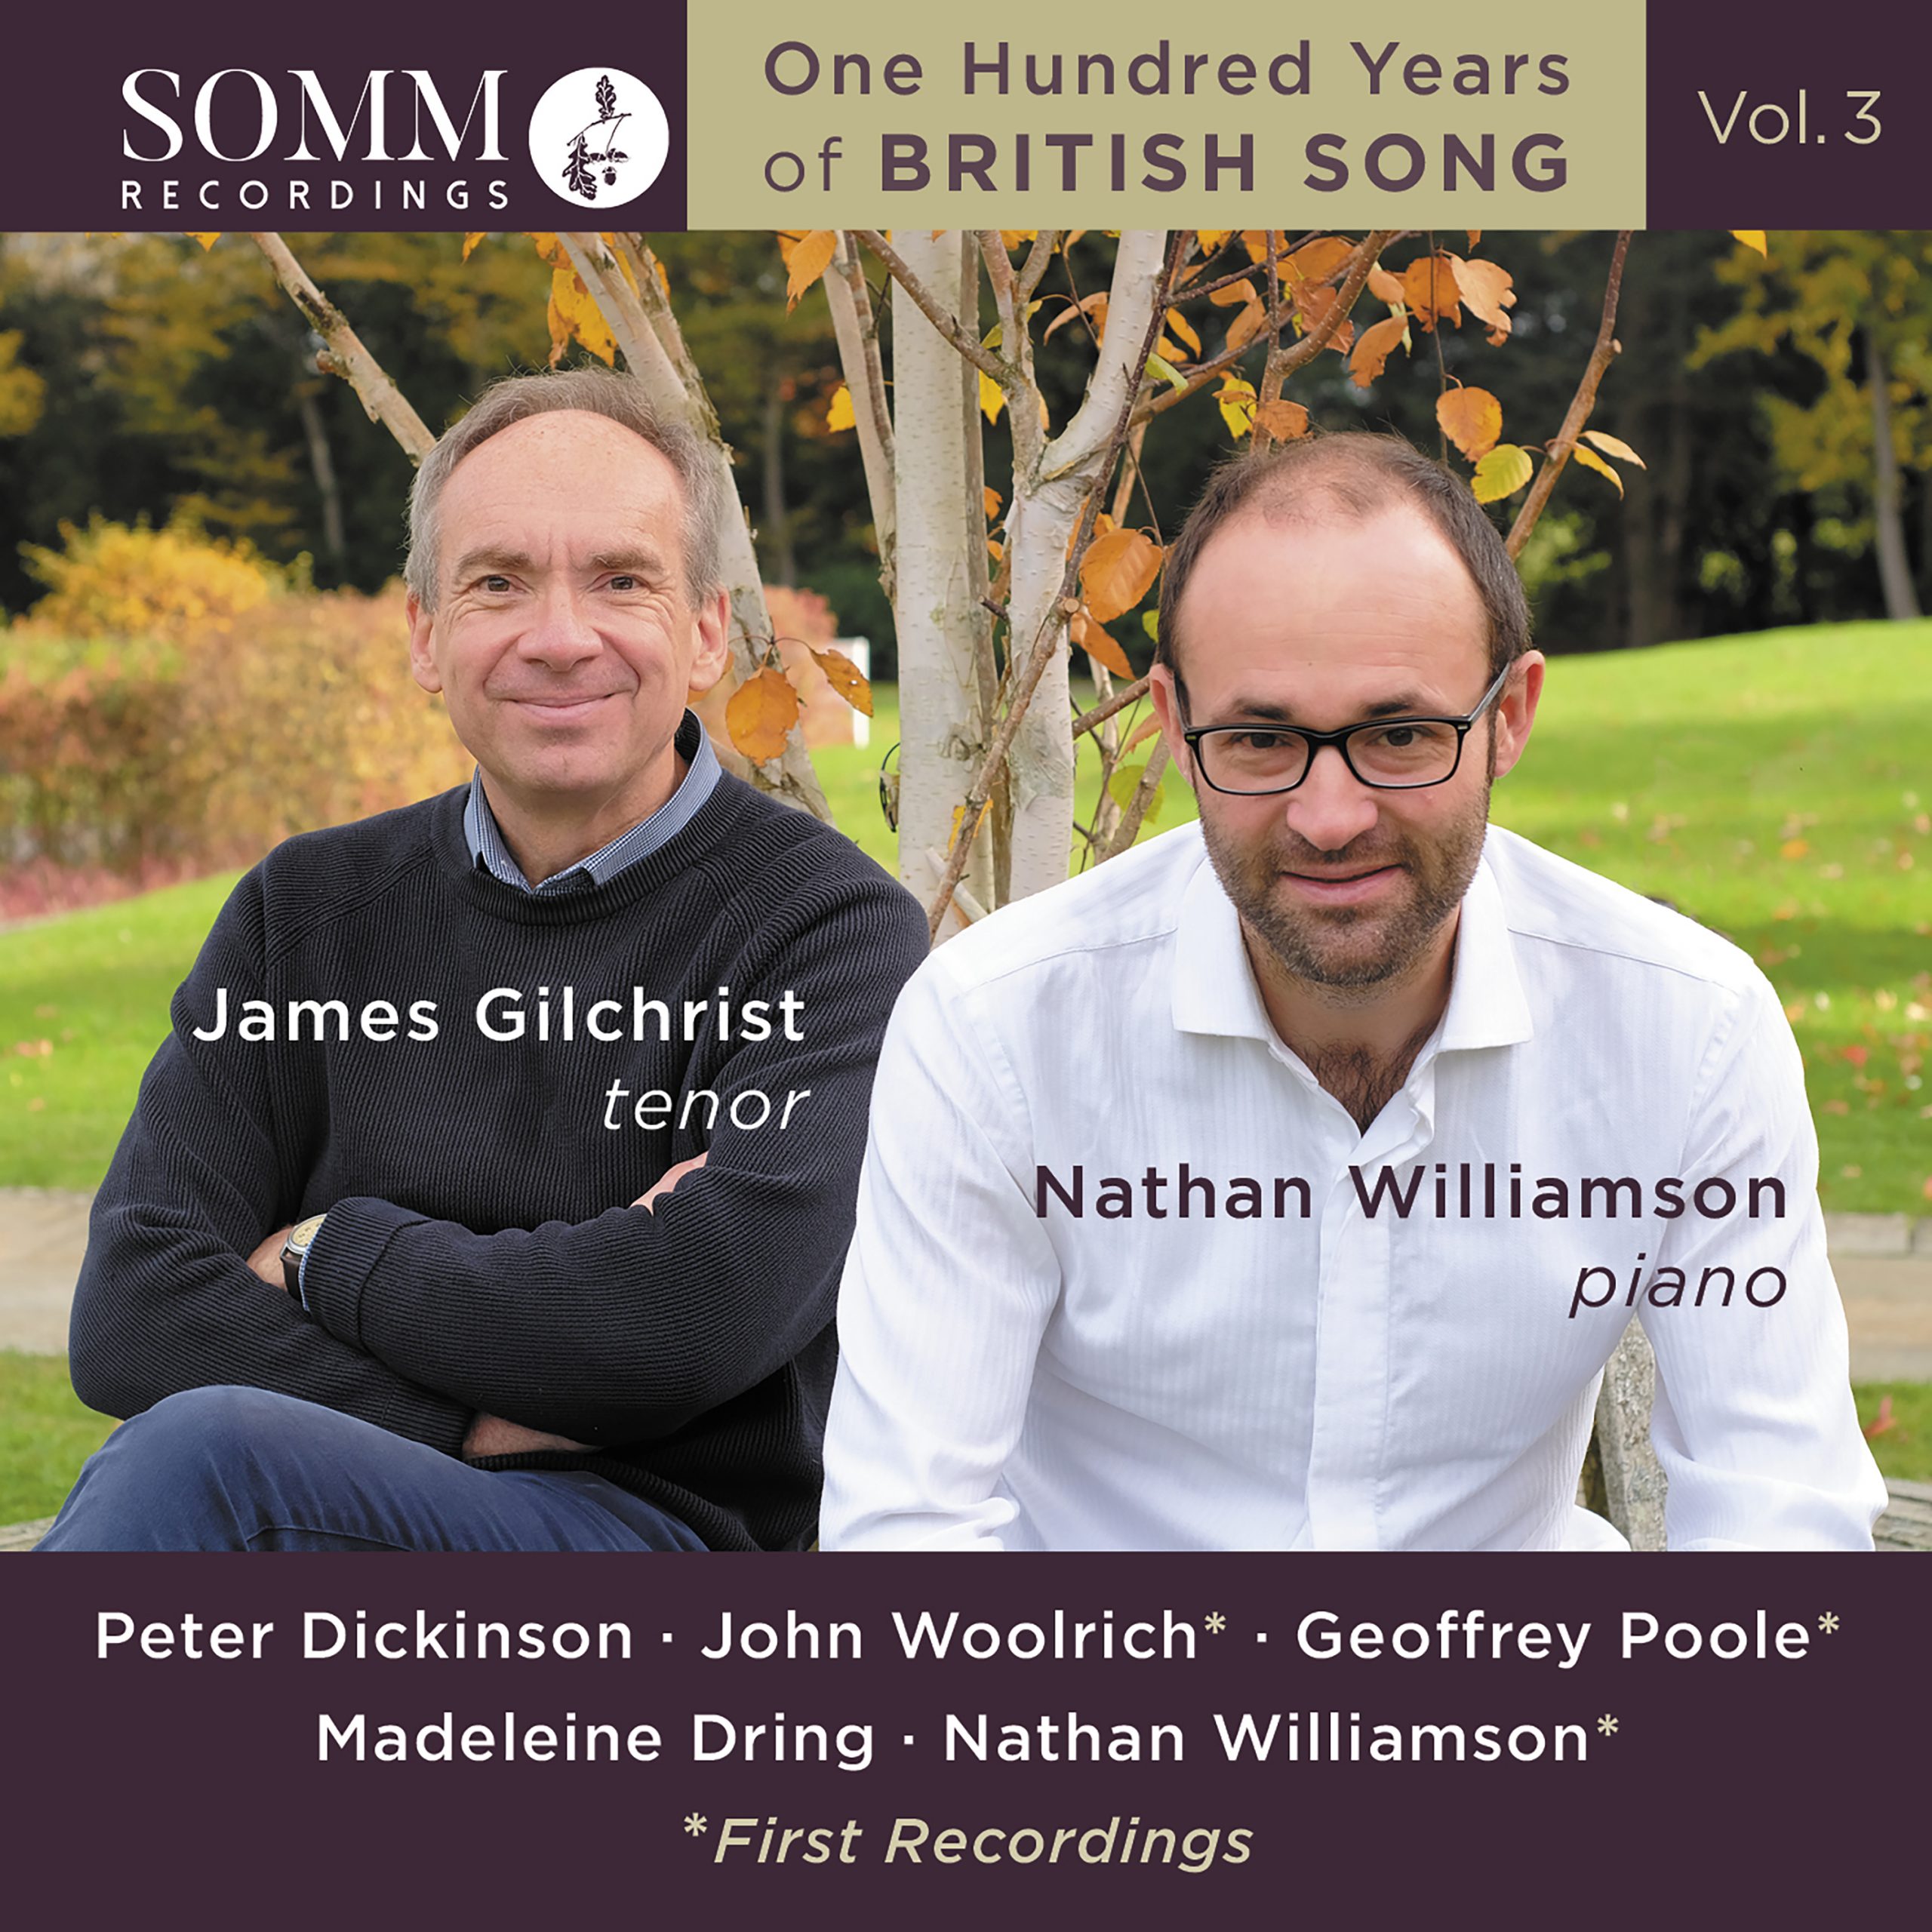 Launching Volume 3 of ‘100 Years of British Song’